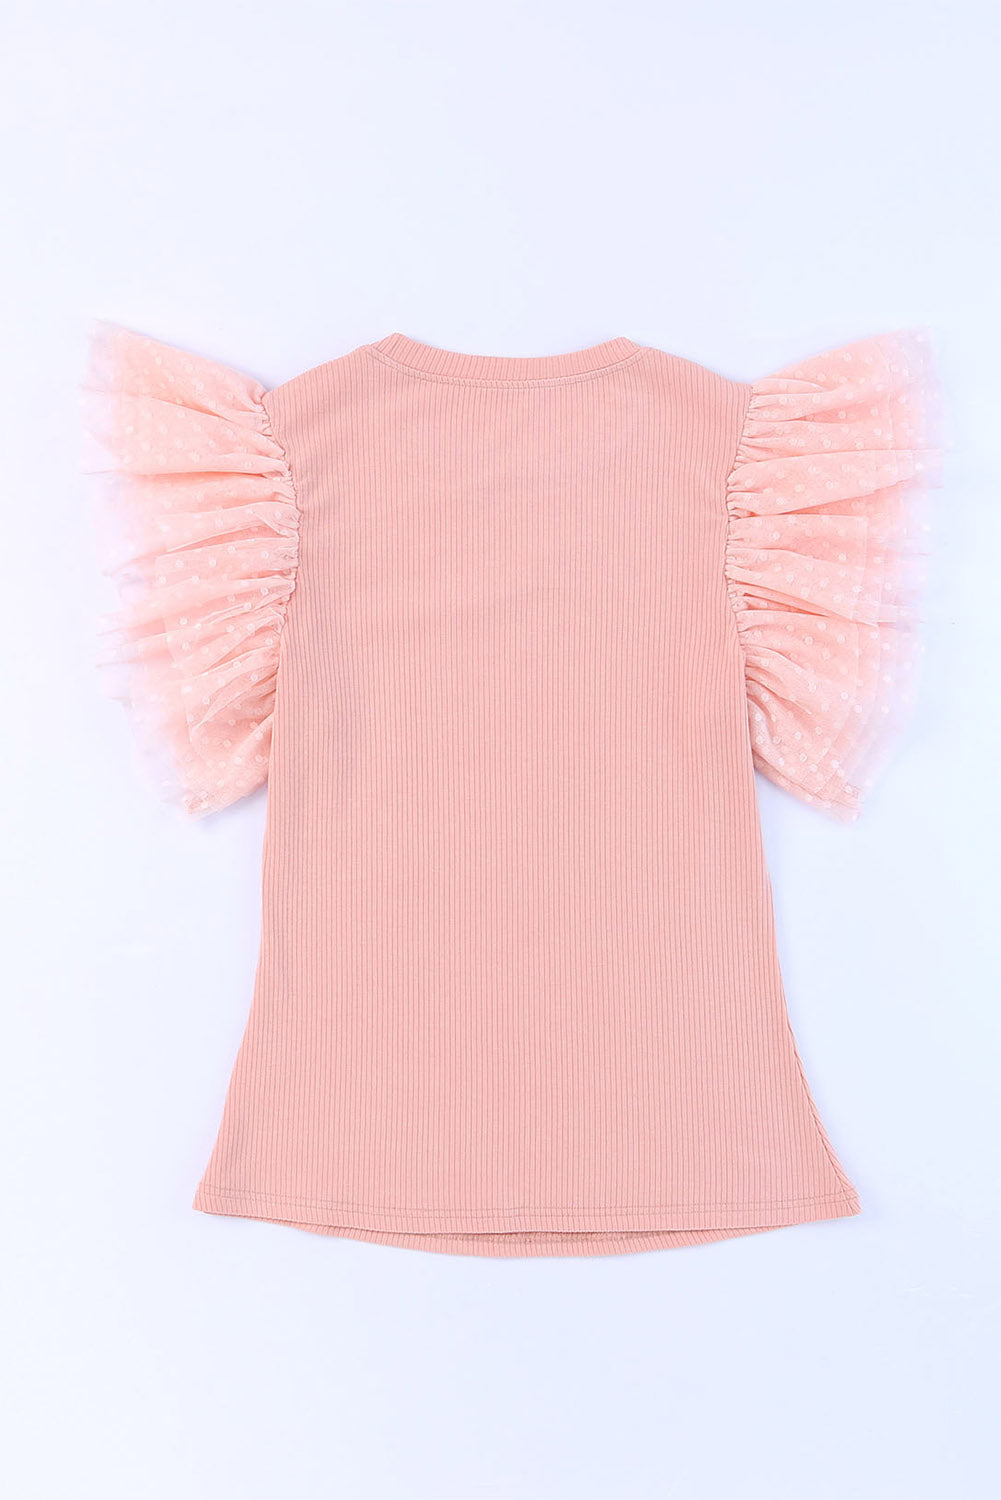 Rožnata pletena majica z mrežastimi rokavi in ​​naborki